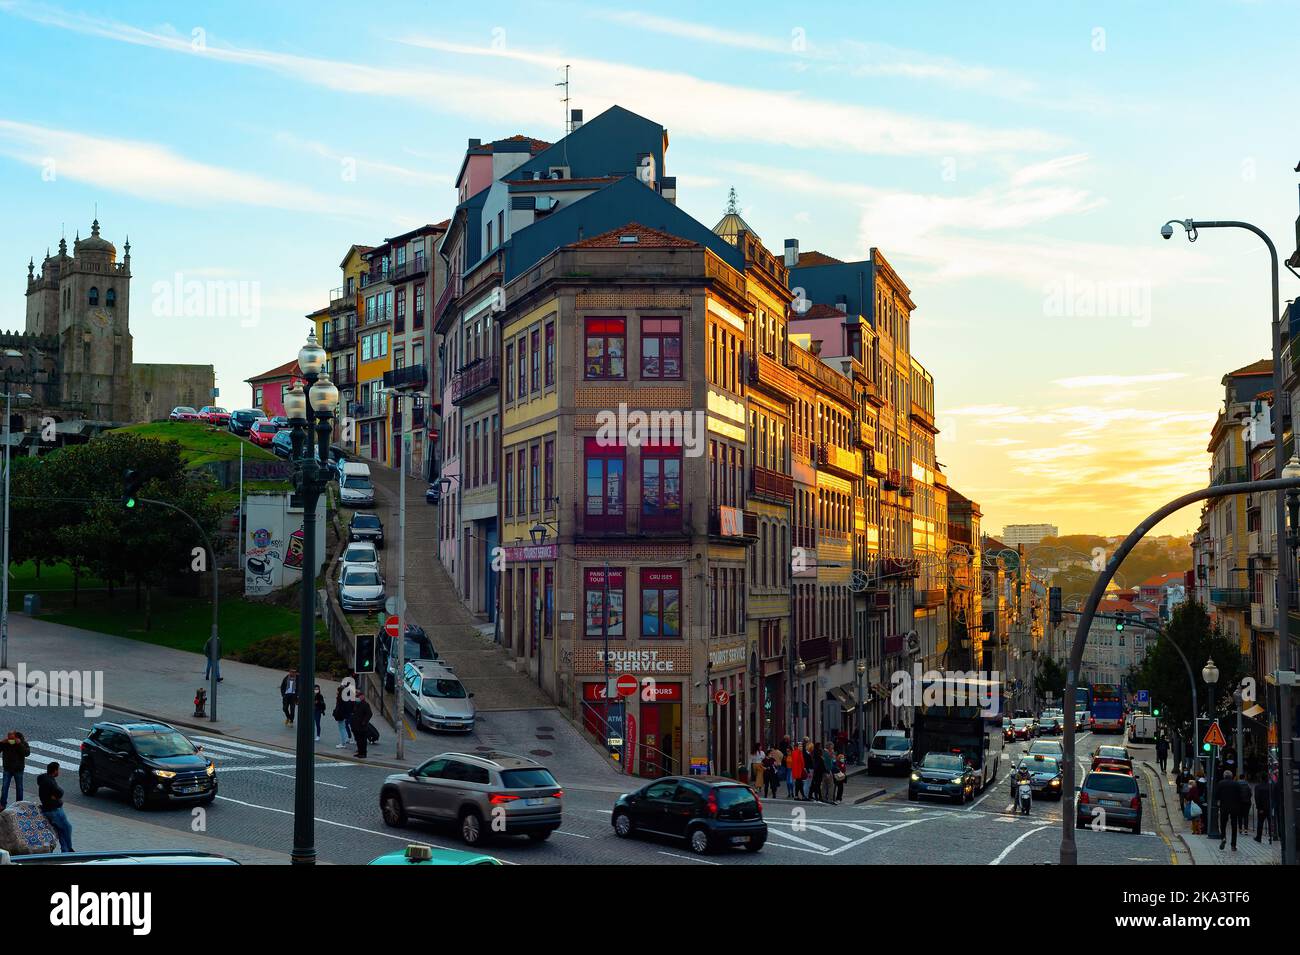 PORTO, PORTUGAL - 15. NOVEMBER 2021: Sonnenuntergang in der Innenstadt, Verkehr auf der Straße, historische traditionelle Architektur, geflieste Fassaden, touristisches Ziel Stockfoto